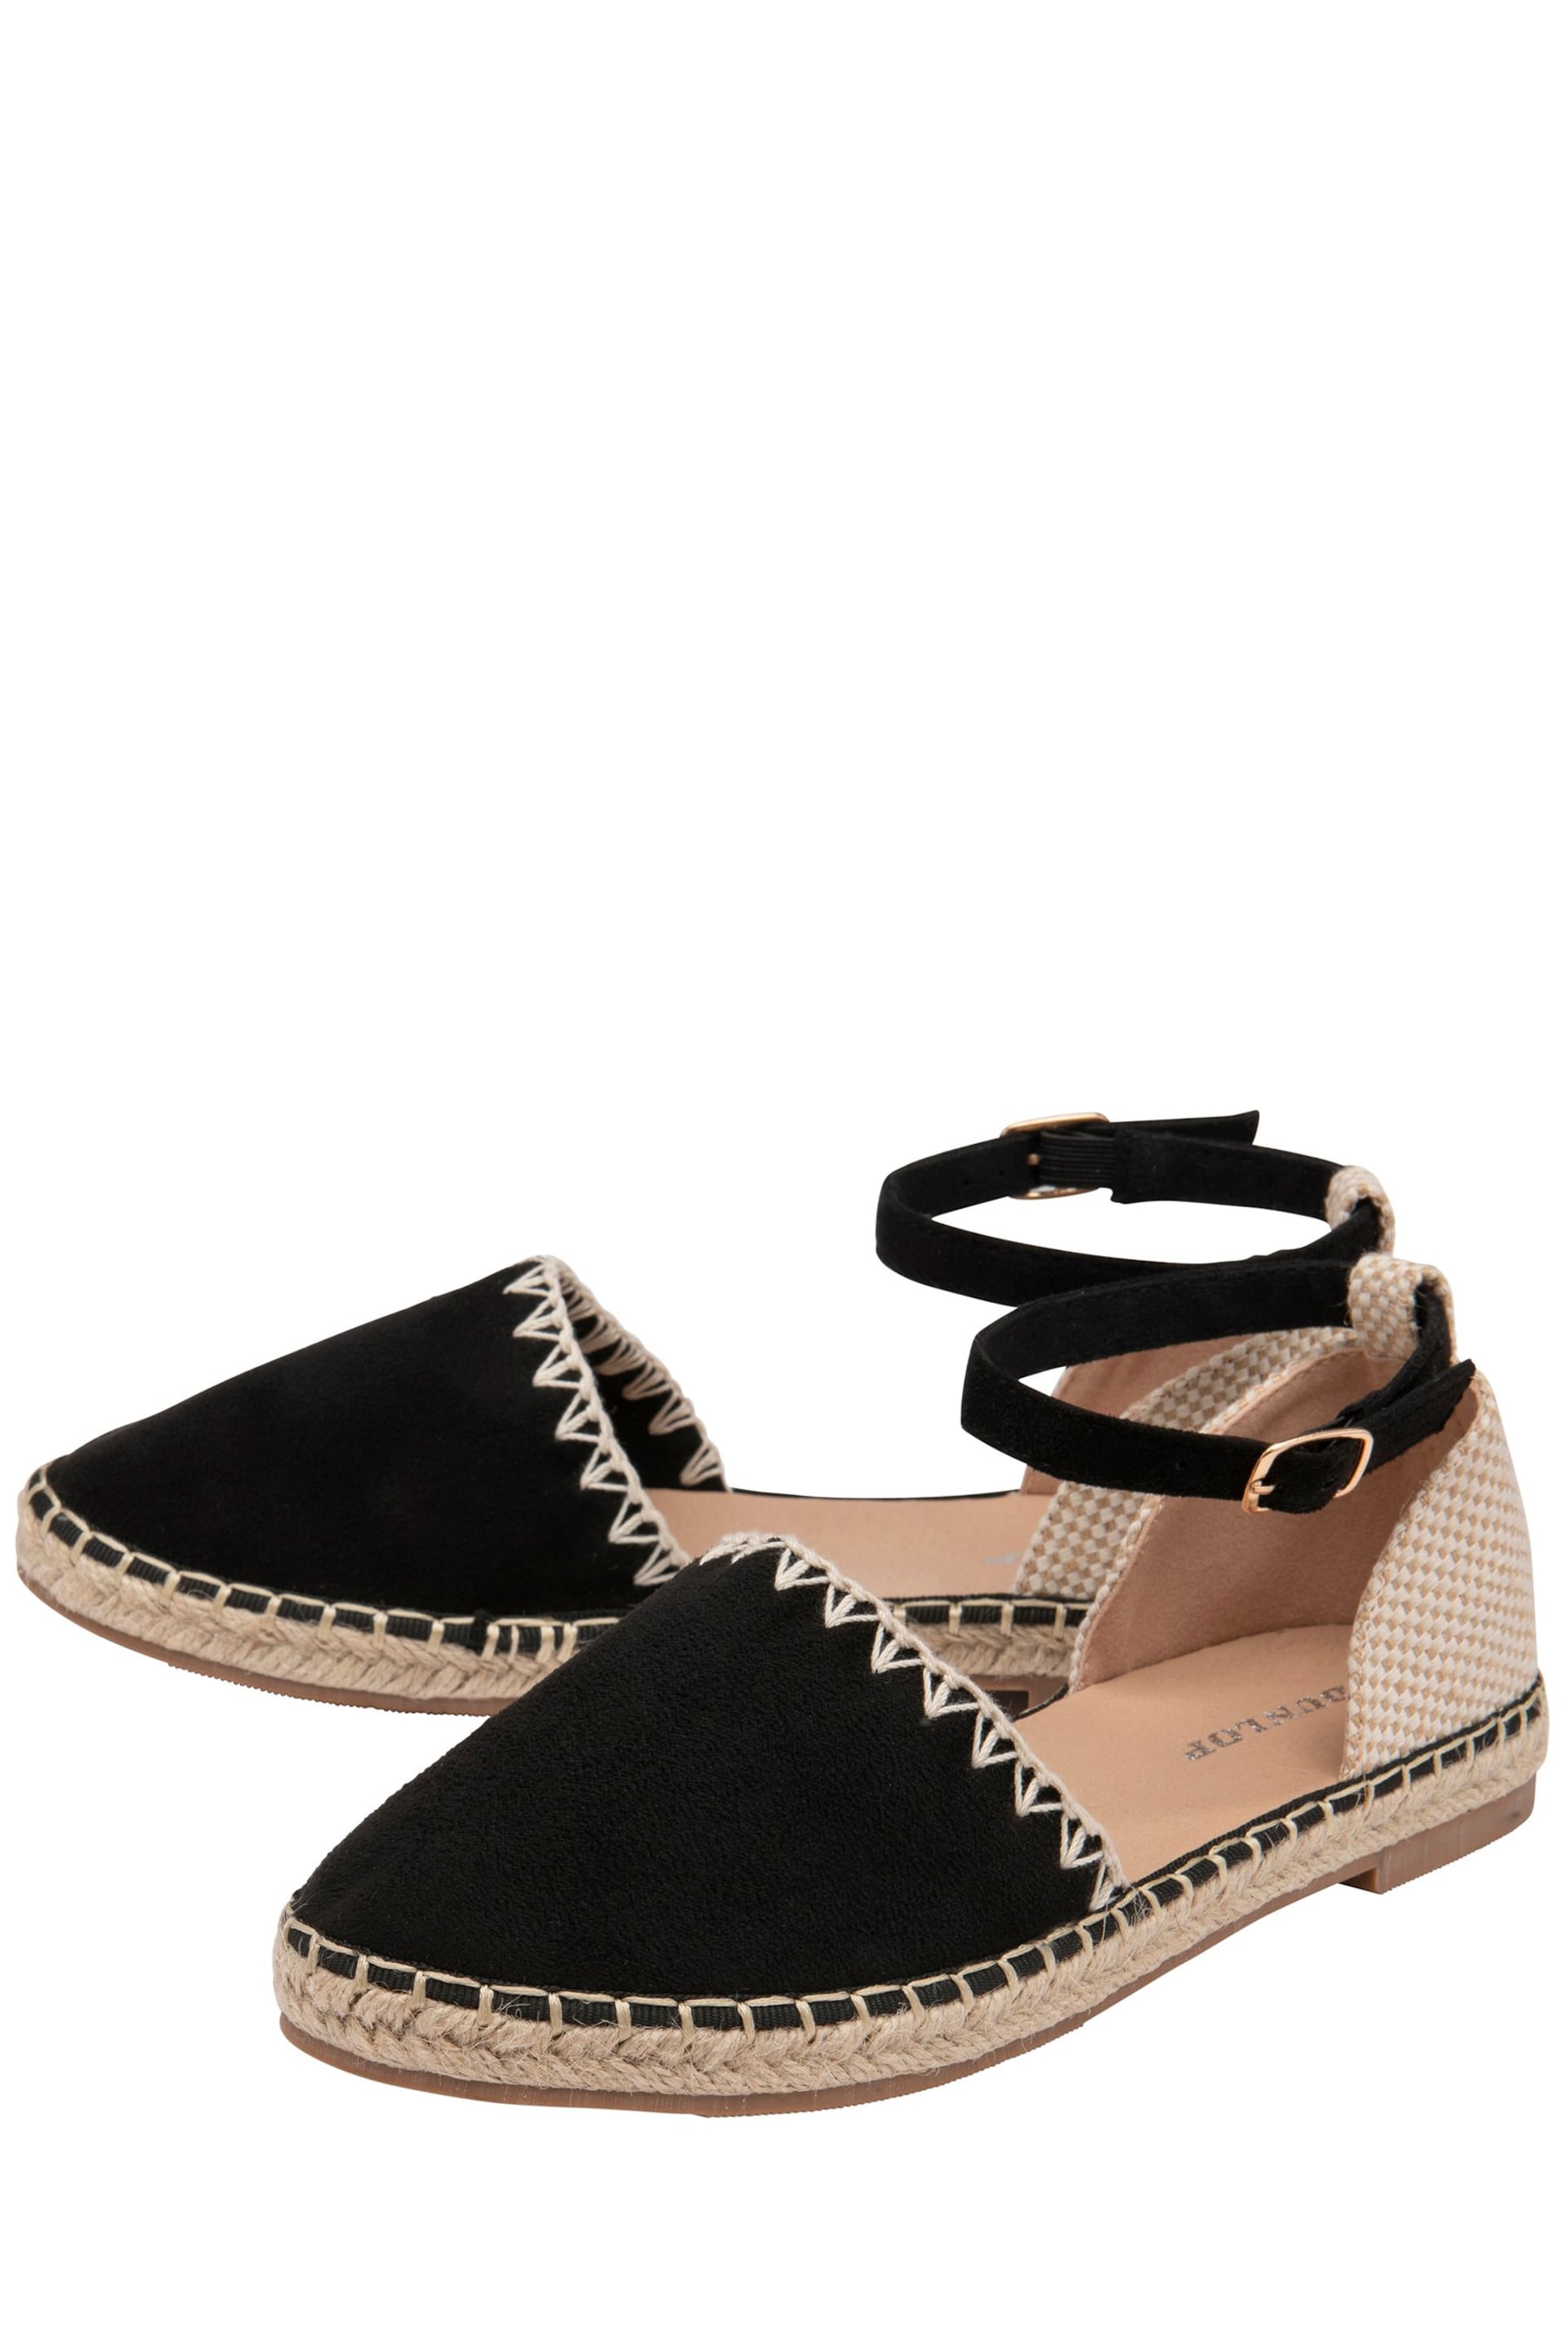 Dunlop Black Flat Espadrille Sandals - Image 2 of 4